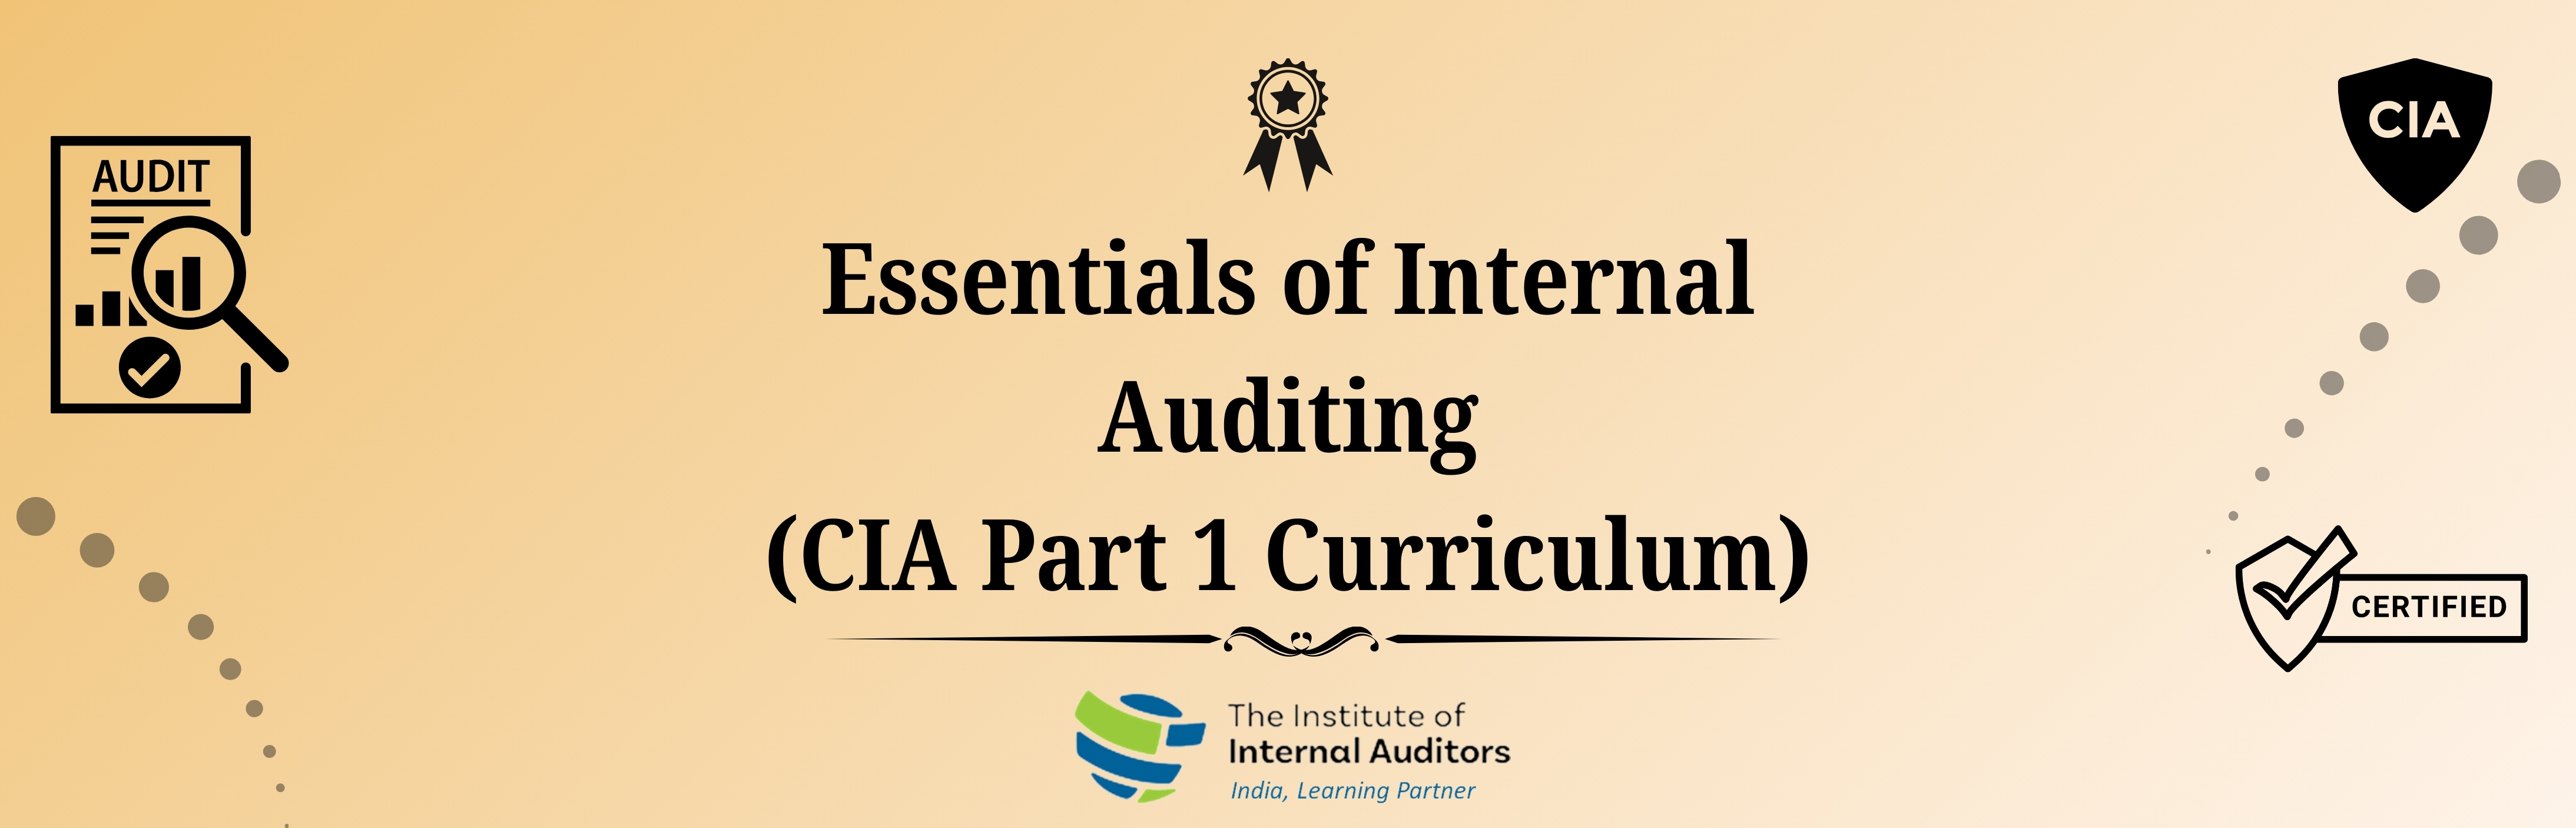 Essentials of Internal Auditing (CIA Part 1 Curriculum)